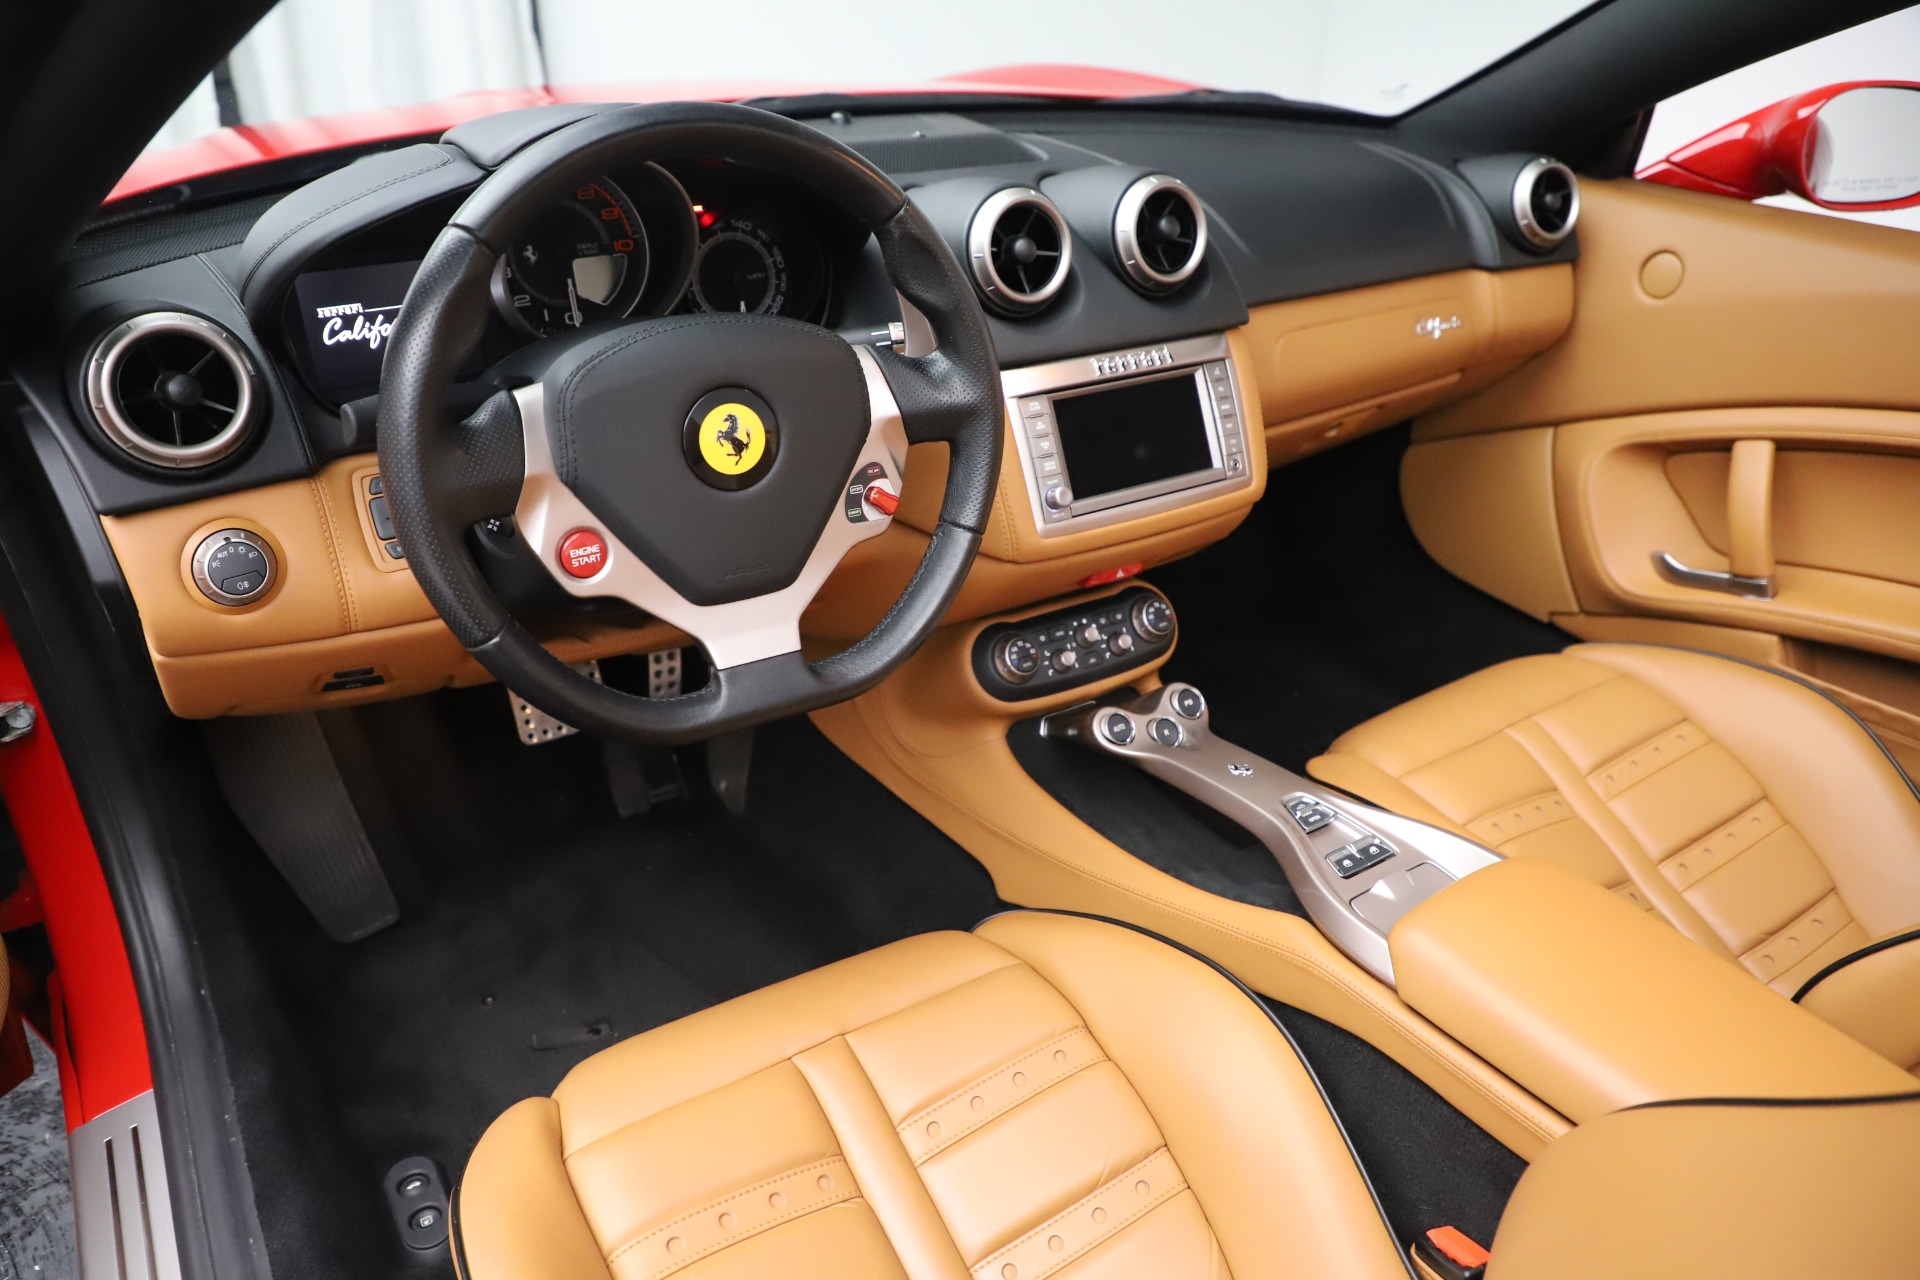 Pre-Owned 2013 Ferrari California 30 For Sale () | Miller Motorcars ...